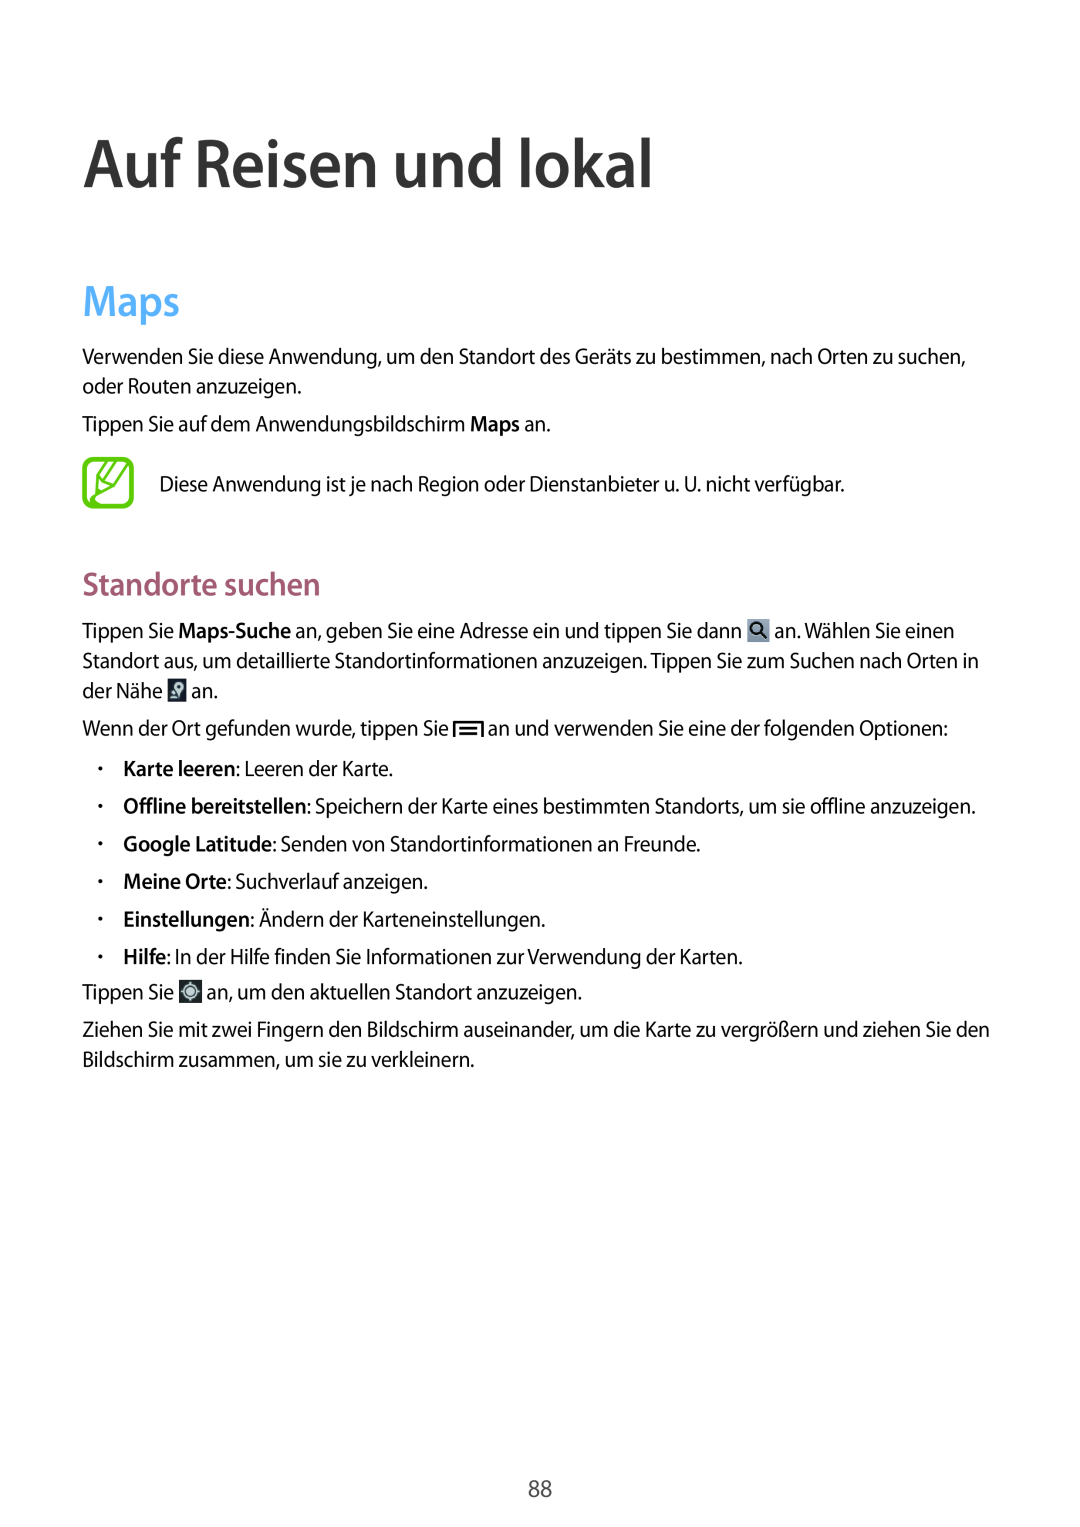 Samsung GT-P5220ZWASEB, GT-P5220ZWAVD2, GT-P5220MKADBT, GT-P5220ZWADTM manual Auf Reisen und lokal, Maps, Standorte suchen 